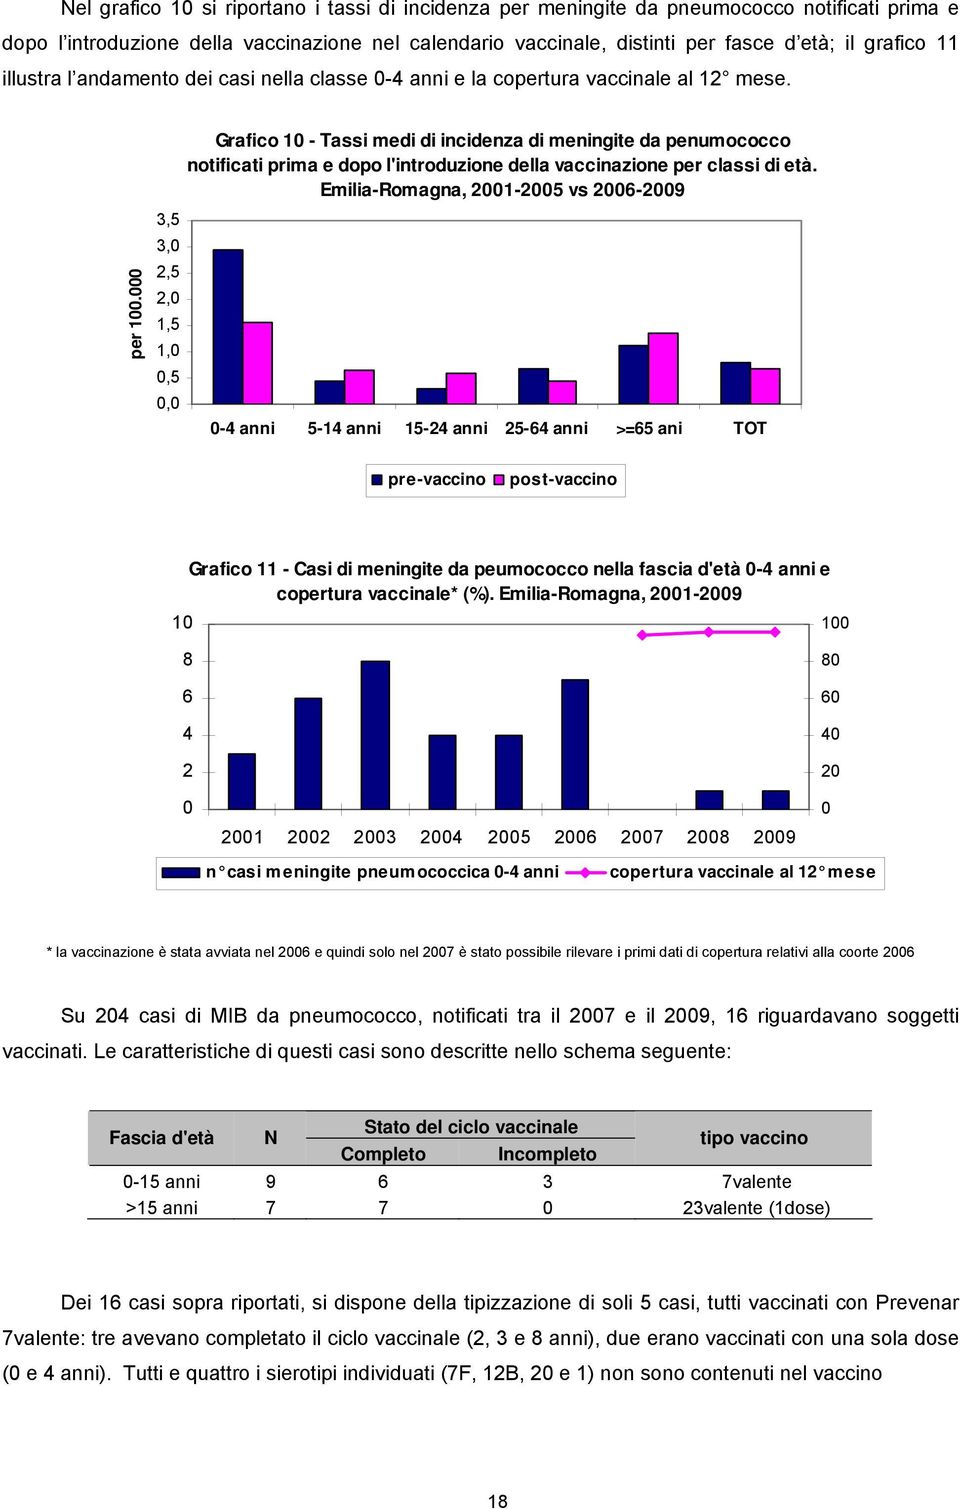 Grafico 10 - Tassi medi di incidenza di meningite da penumococco notificati prima e dopo l'introduzione della vaccinazione per classi di età. Emilia-Romagna, 2001-2005 vs 2006-2009 per 100.